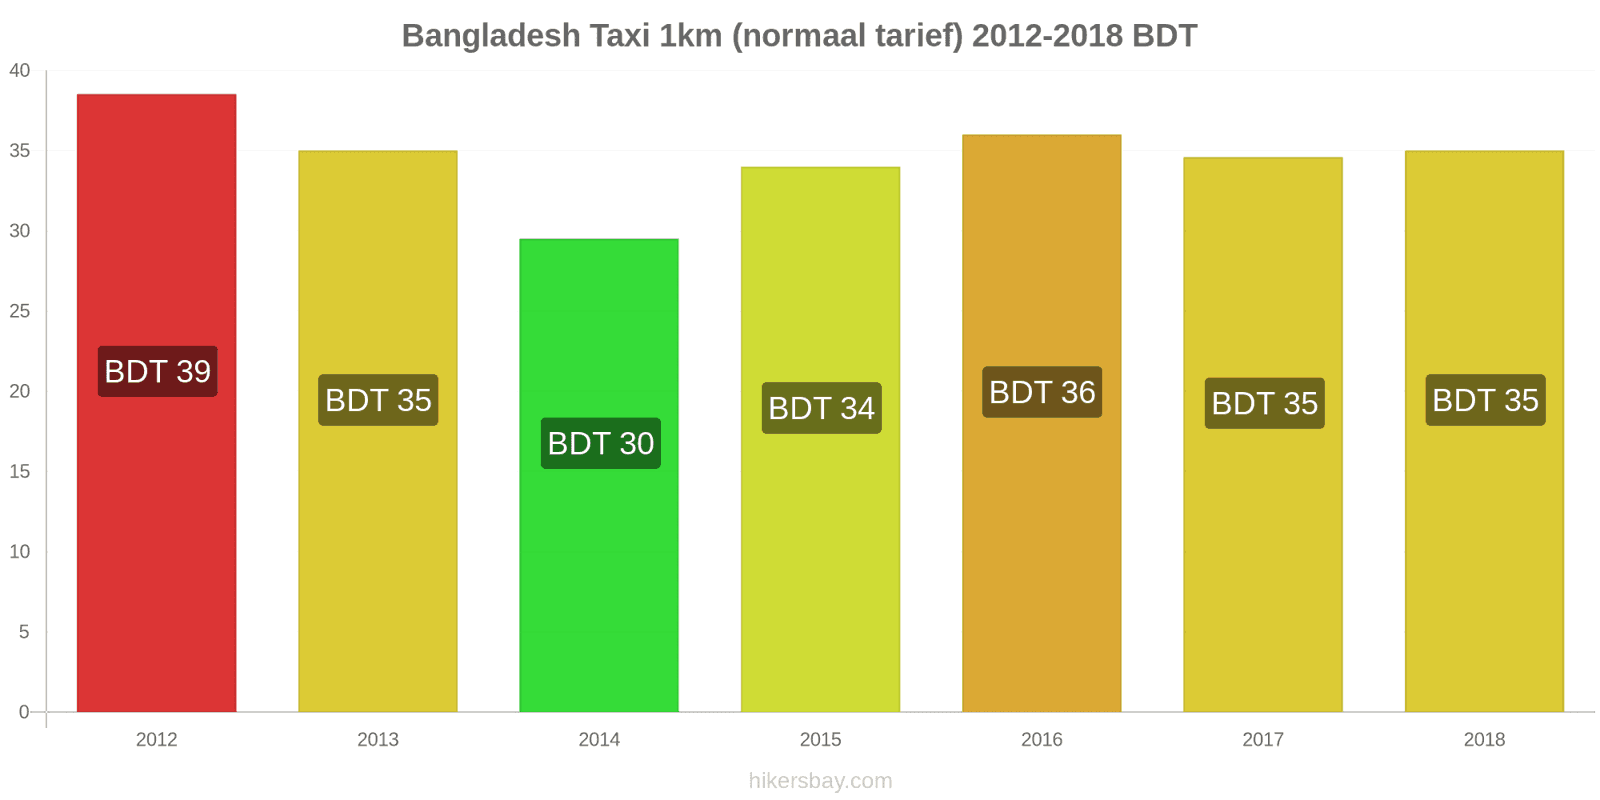 Bangladesh prijswijzigingen Taxi 1km (normaal tarief) hikersbay.com